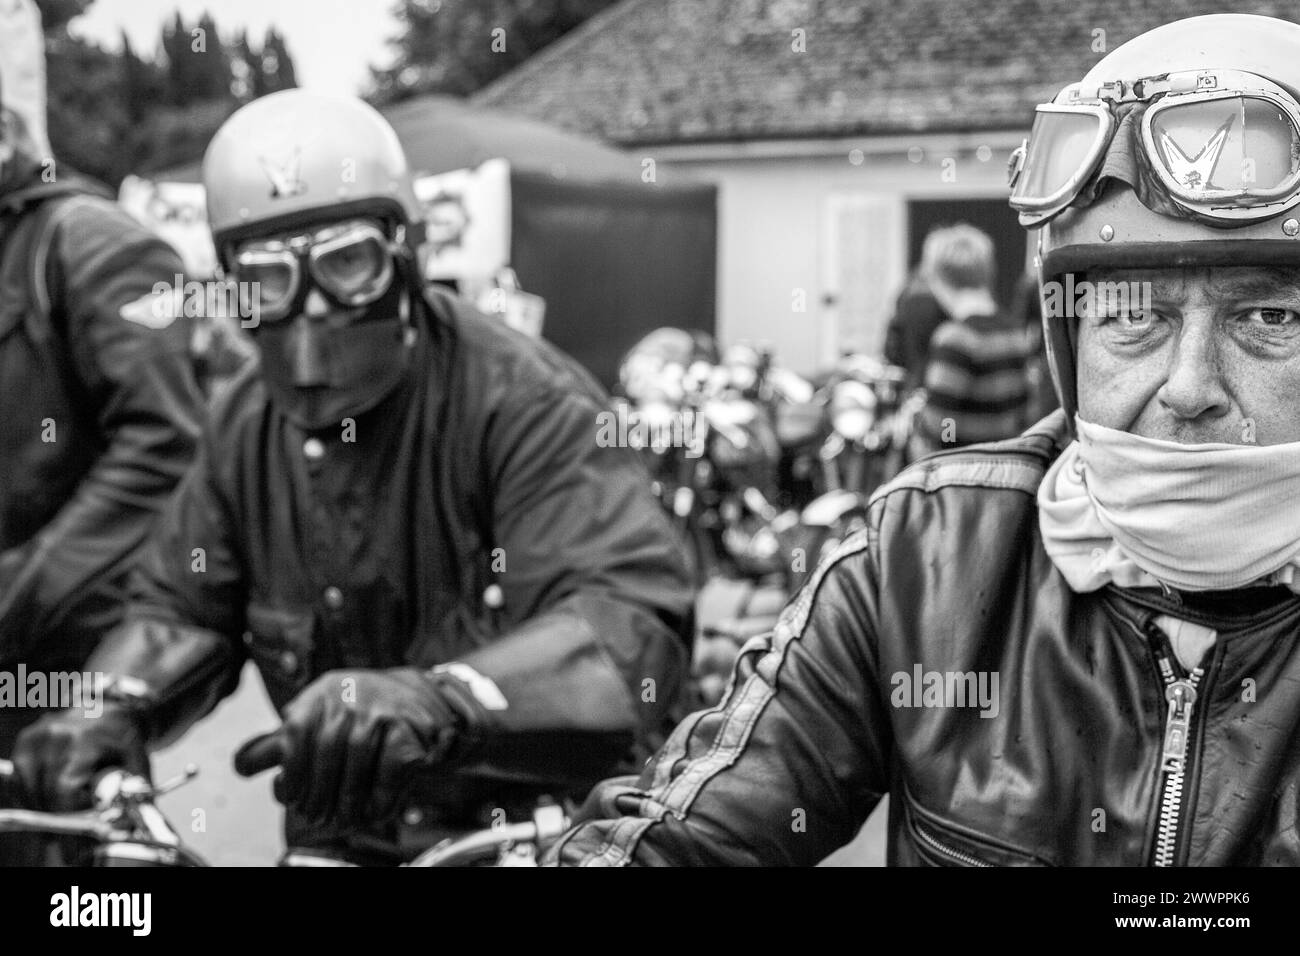 Zwei Motorradfahrer sitzen auf Motorrädern mit Retrohelm und Schutzbrille. Stockfoto